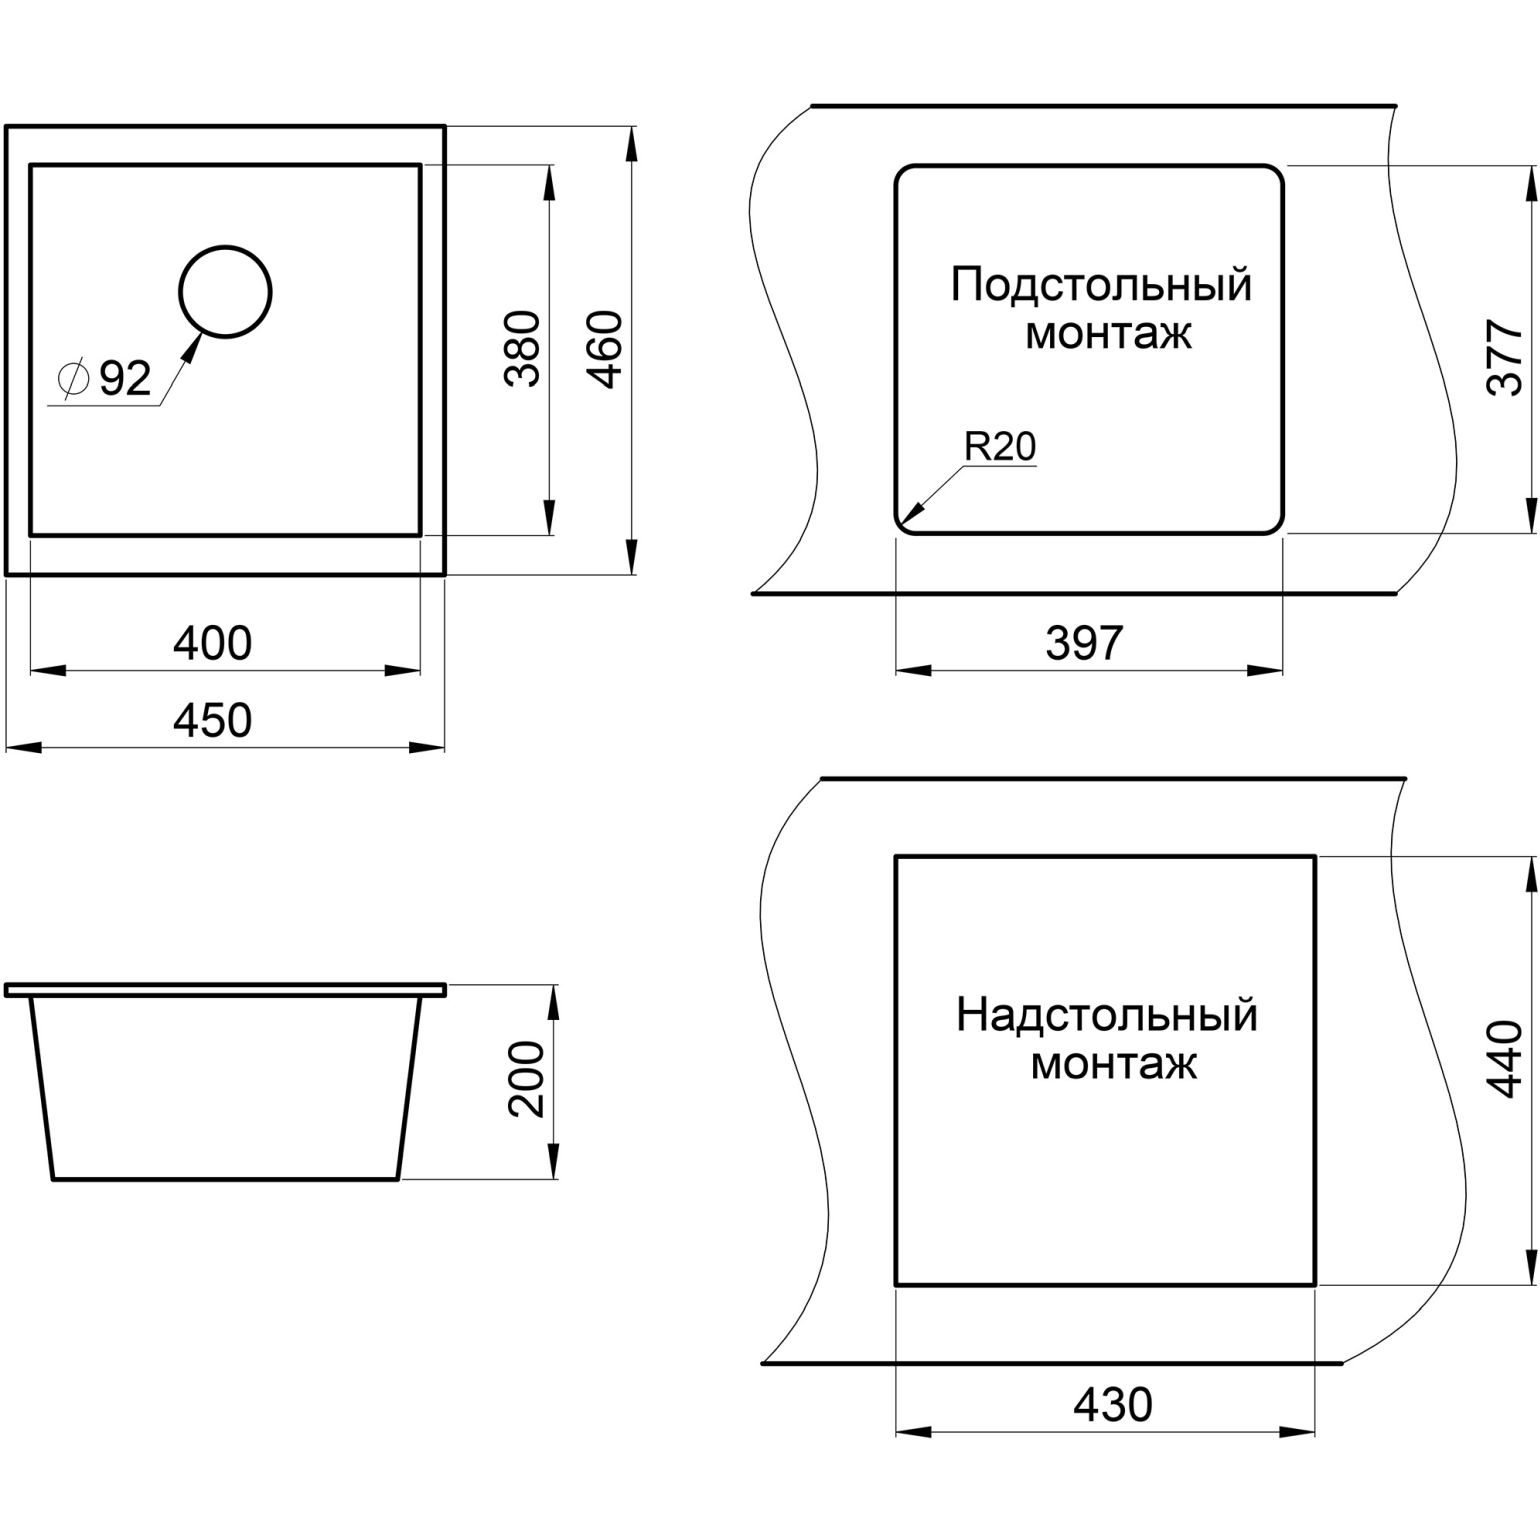 Кухонная мойка кварцевая Granula GR-4451 квадратная подстольная односекционная, подстольная, чаша 400х380, цвет арктик (4451wh)